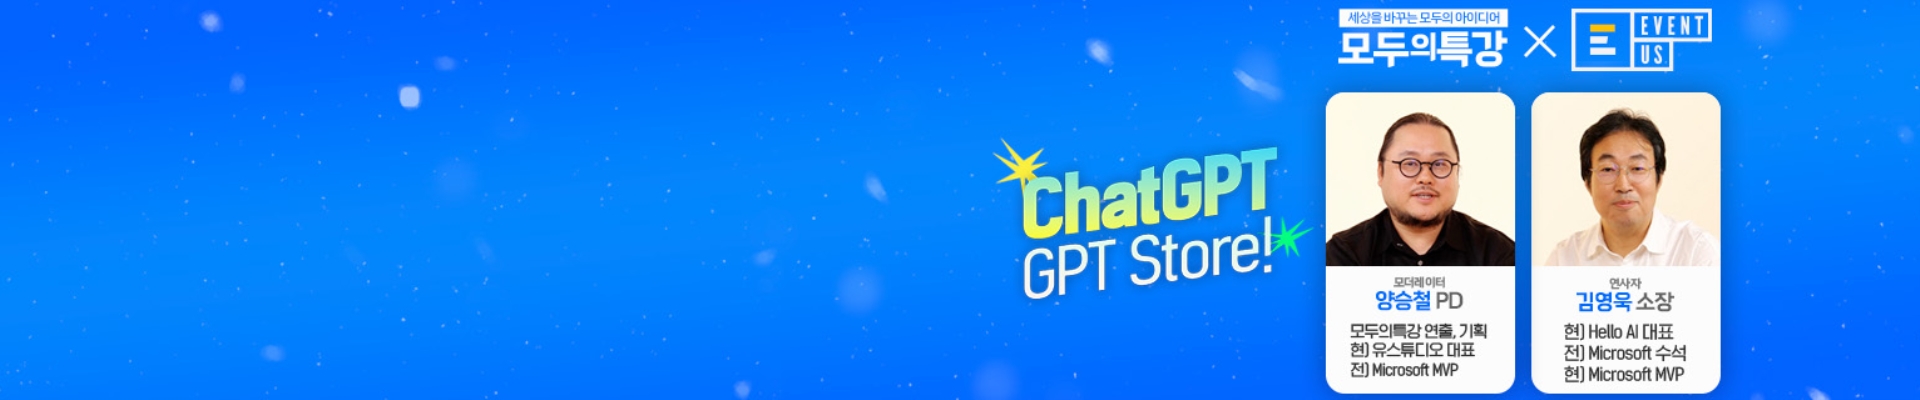 모두의특강 : ChatGPT Store 오픈! 유용한 앱 둘러보기